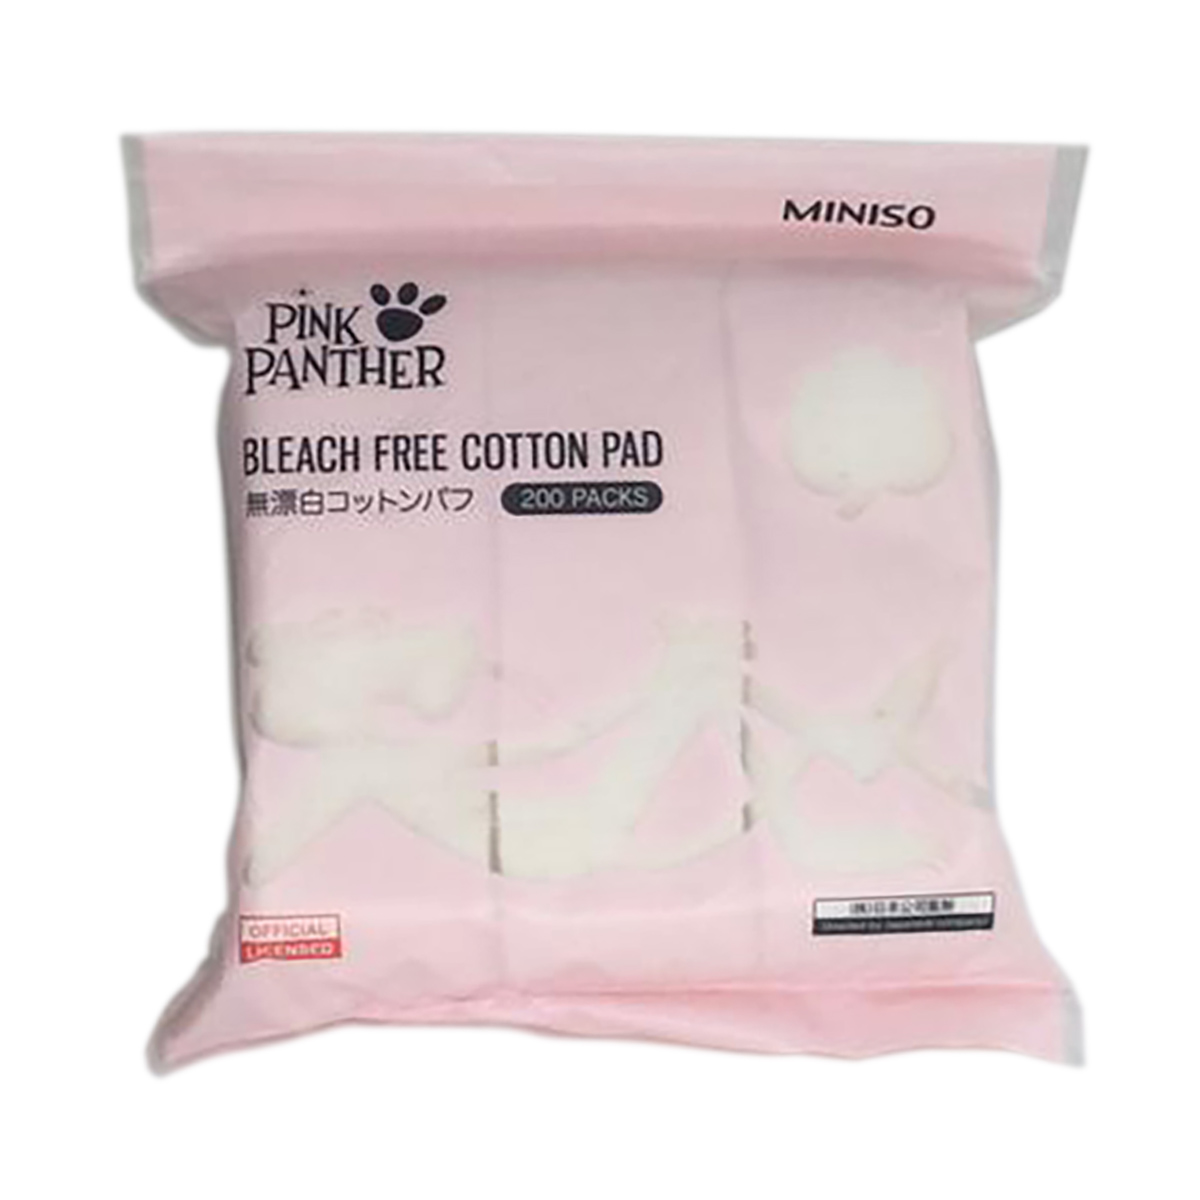 Bông trang điểm ( bông tẩy trang) Nhật Bản bằng bông tự nhiên không tẩy trắng hảo hạng Báo Hồng Miniso Pink Panther Bleach Free Cotton Pad ( gói 200 miếng) không xơ bông bám trên da – MNS068